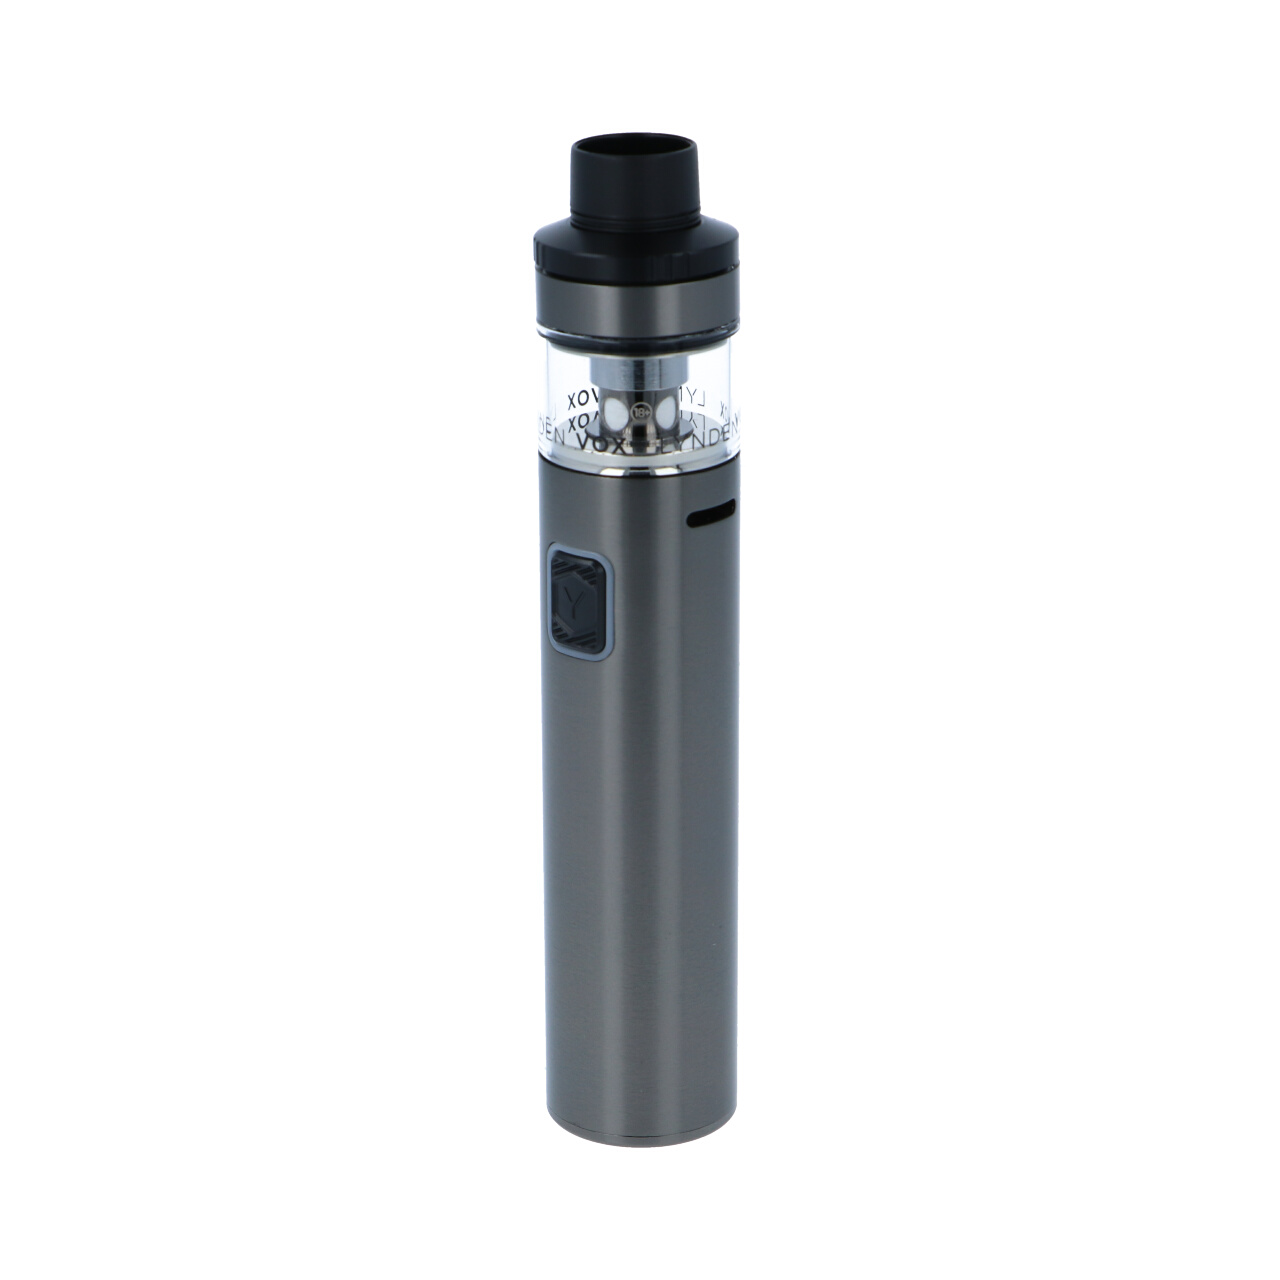 LYNDEN X Refill POD System E-Zigarette Farbe (Geräte) schwarz